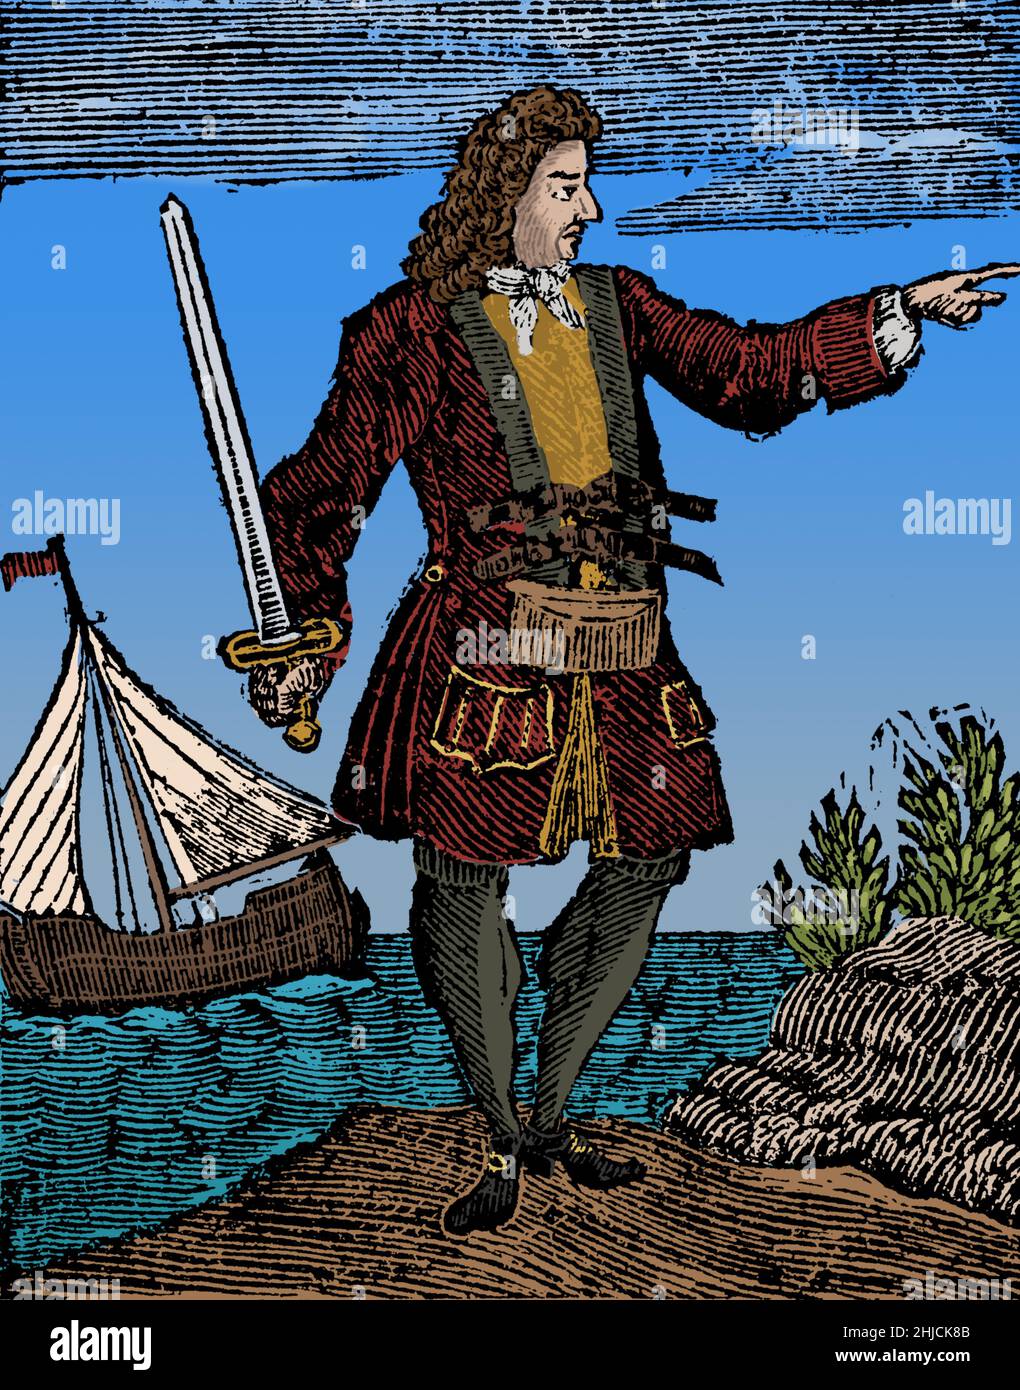 Charles Vane (1680 - 29 mars 1721) était un pirate anglais qui a opéré à partir de la base notoire de New Providence aux Bahamas. Ses capacités de navigation et de combat de navires étaient inaptes, et il a réussi à piller de nombreux navires. Alors qu'il opérait entre Cuba et Hispaniola, son équipage l'accusait de lâcheté et il fut laissé derrière lui avec une petite boucle et quelques pirates fidèles. Il a capturé plusieurs navires et reconstruit sa flotte de pirates, mais un ouragan a détruit la plupart d'entre eux et presque toute son équipage s'est noyé. Il a finalement été capturé, emprisonné, jugé, reconnu coupable et pendu. Colorisé. Banque D'Images